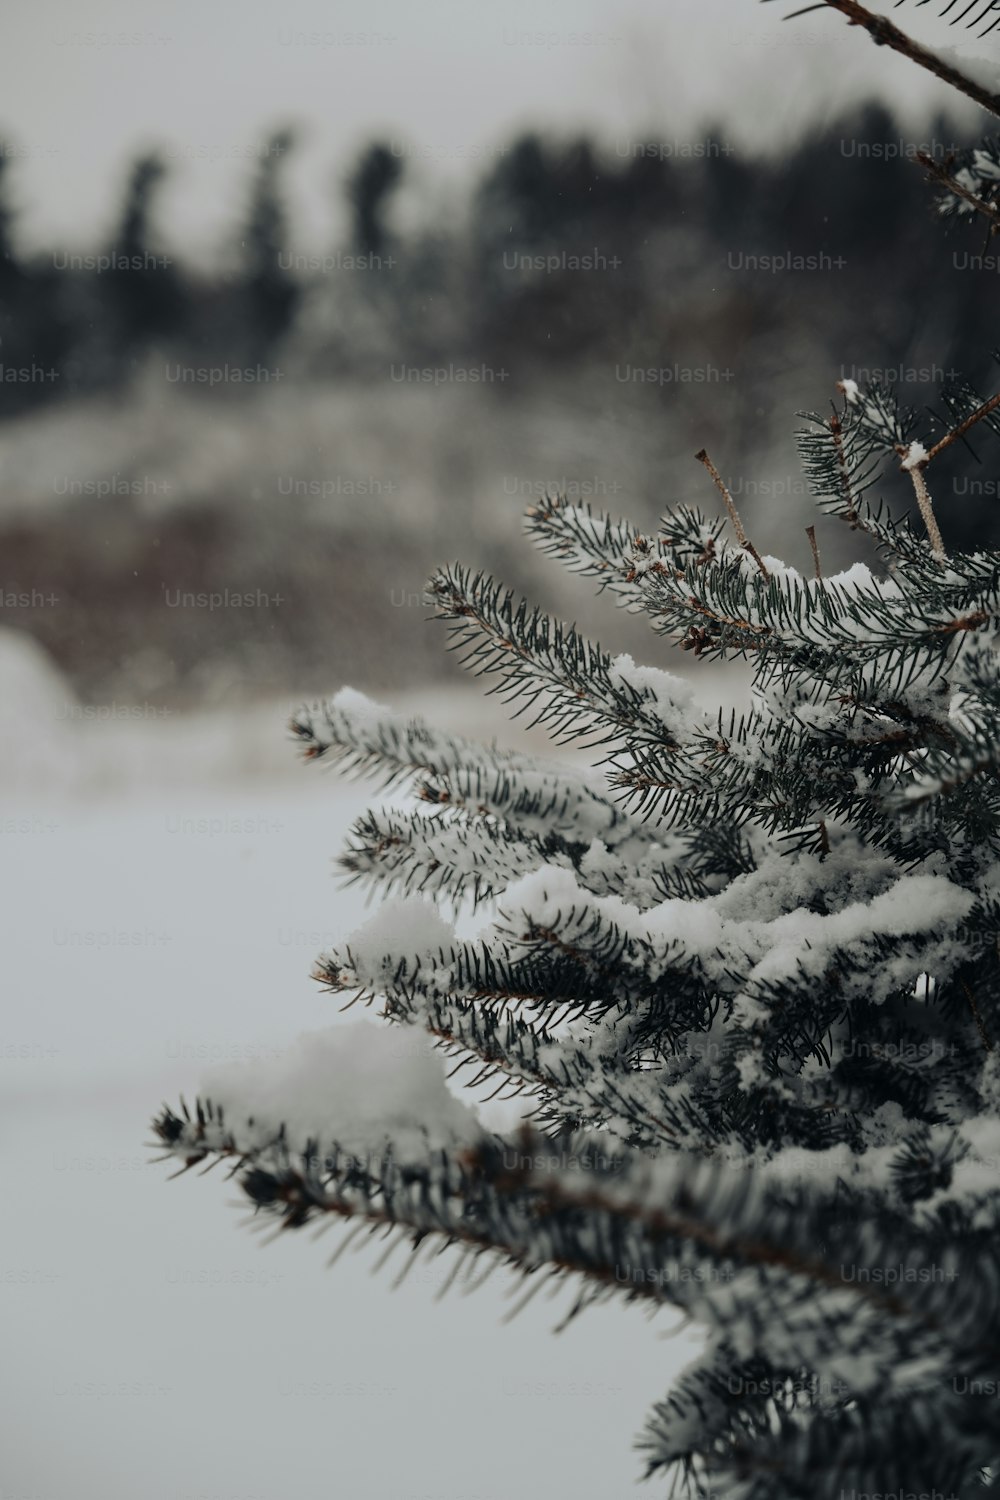 雪が積もった松の木のクローズアップ